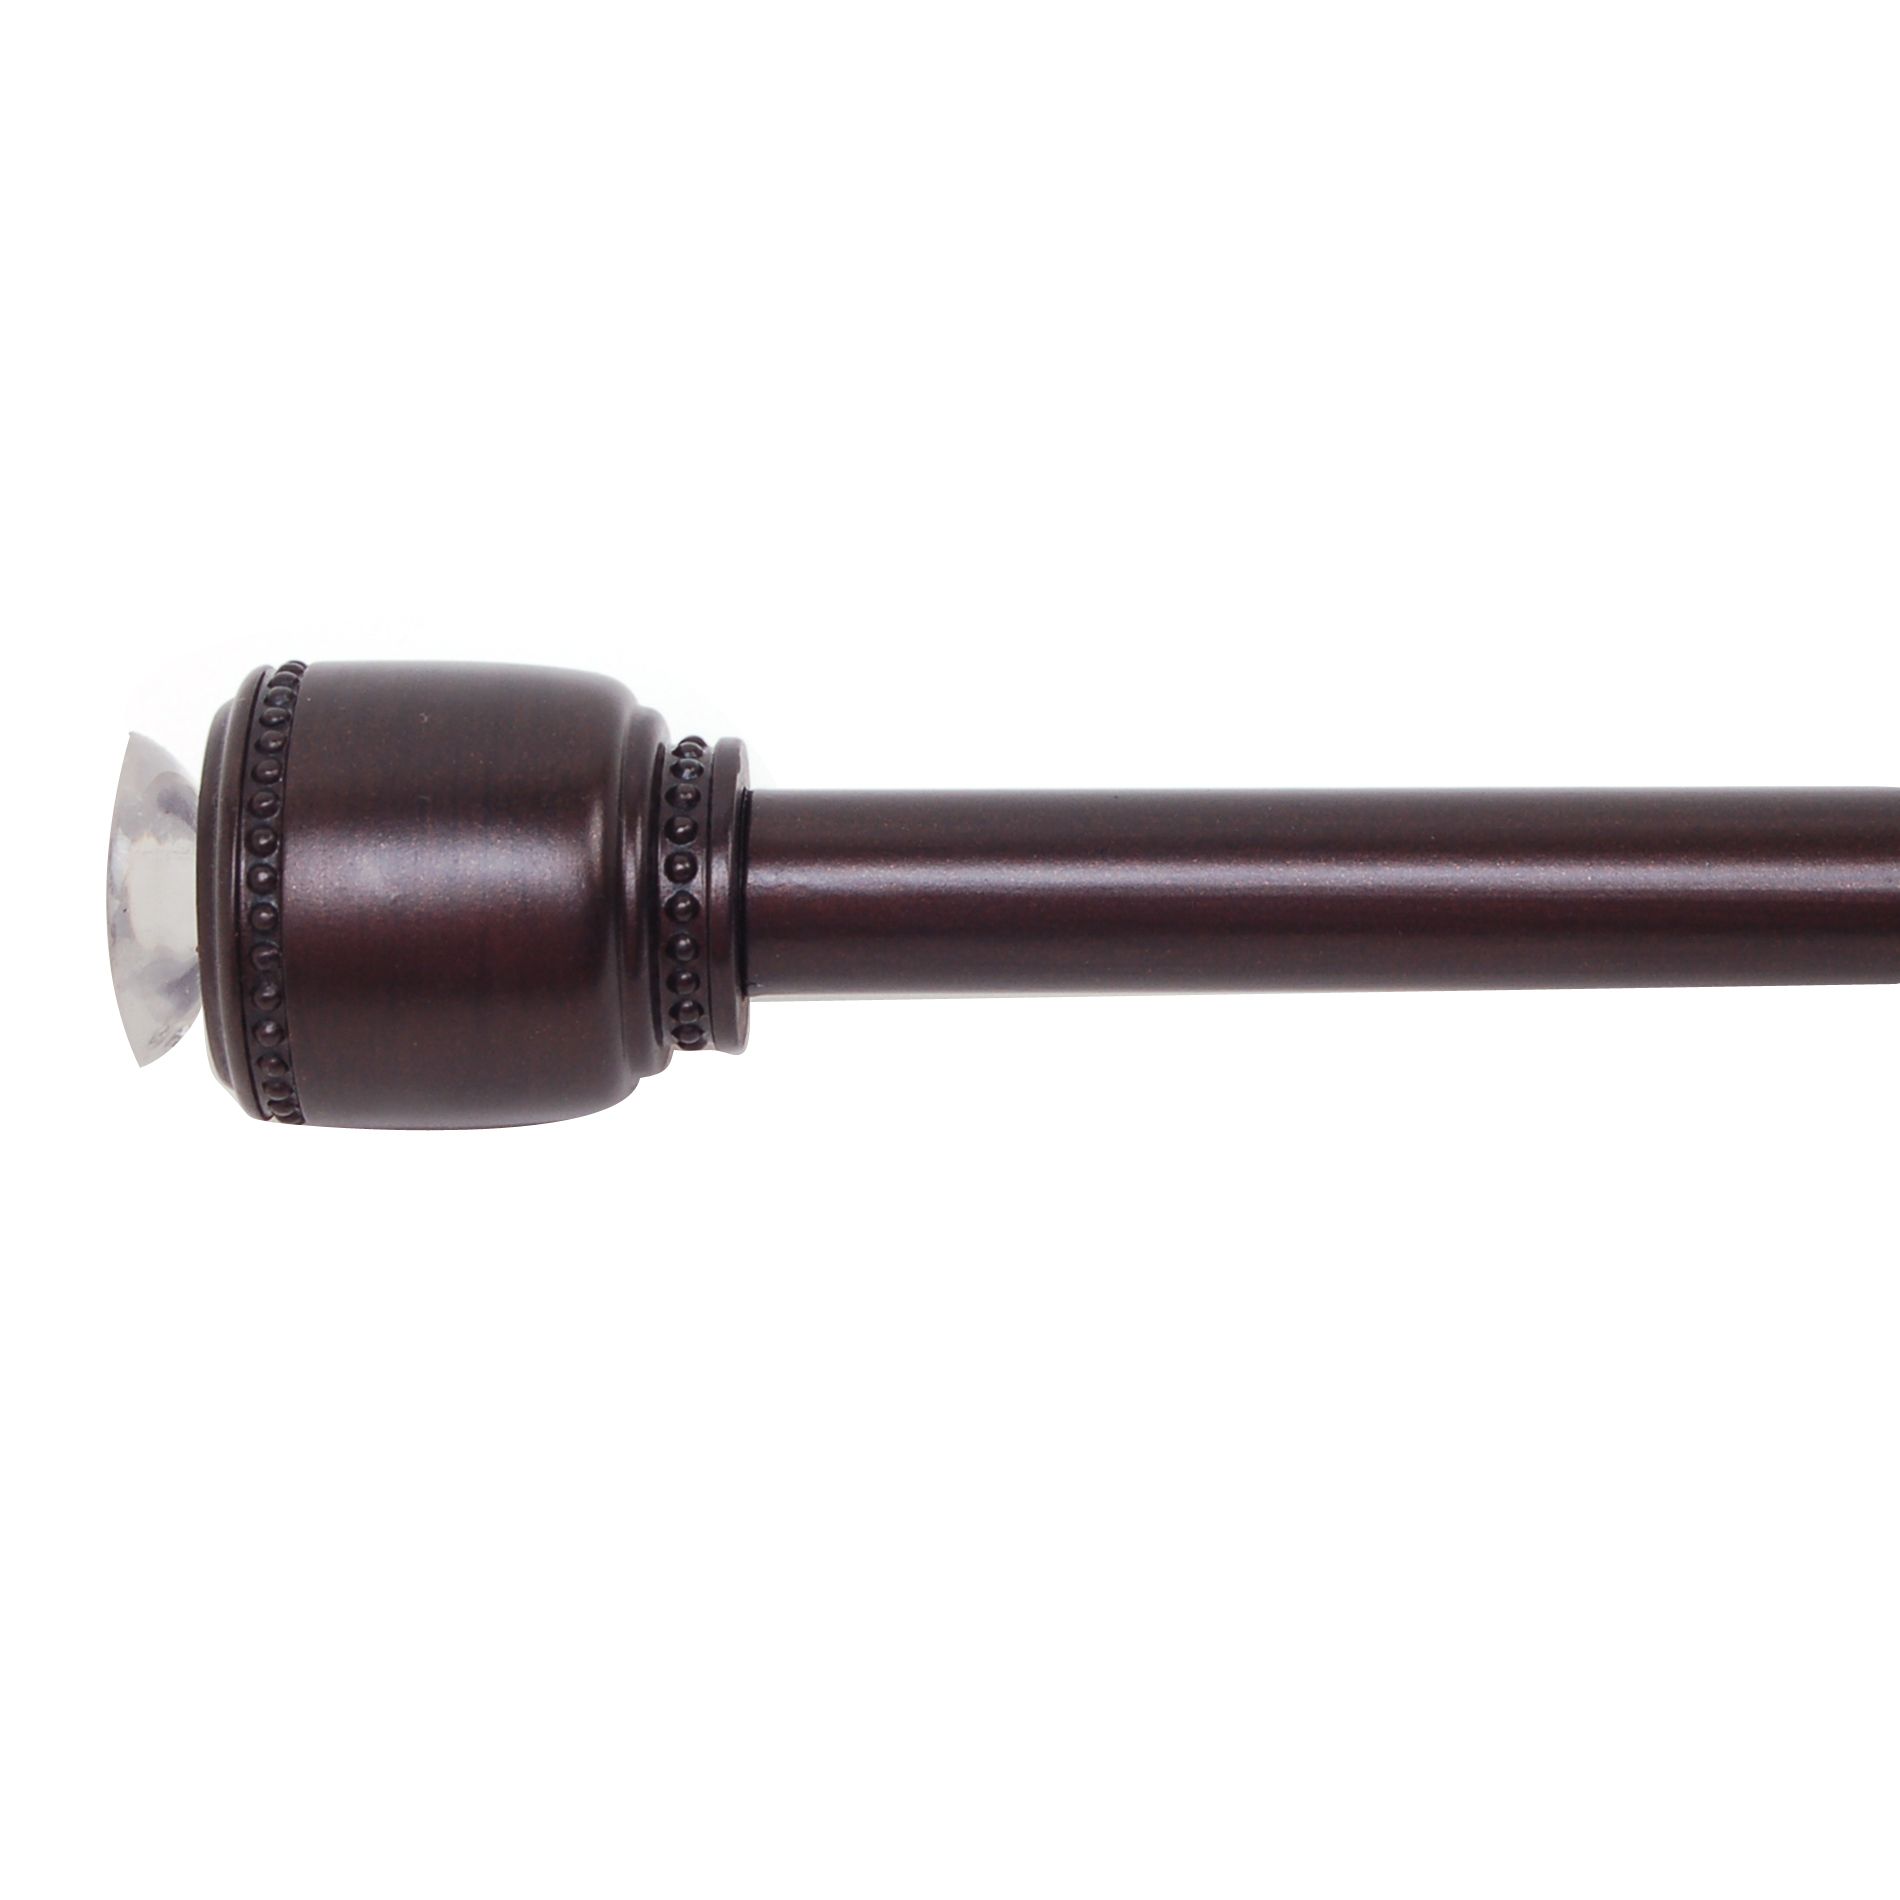 Cannon Oil Rubbed Bronze Suzen Decorative Tension Rod